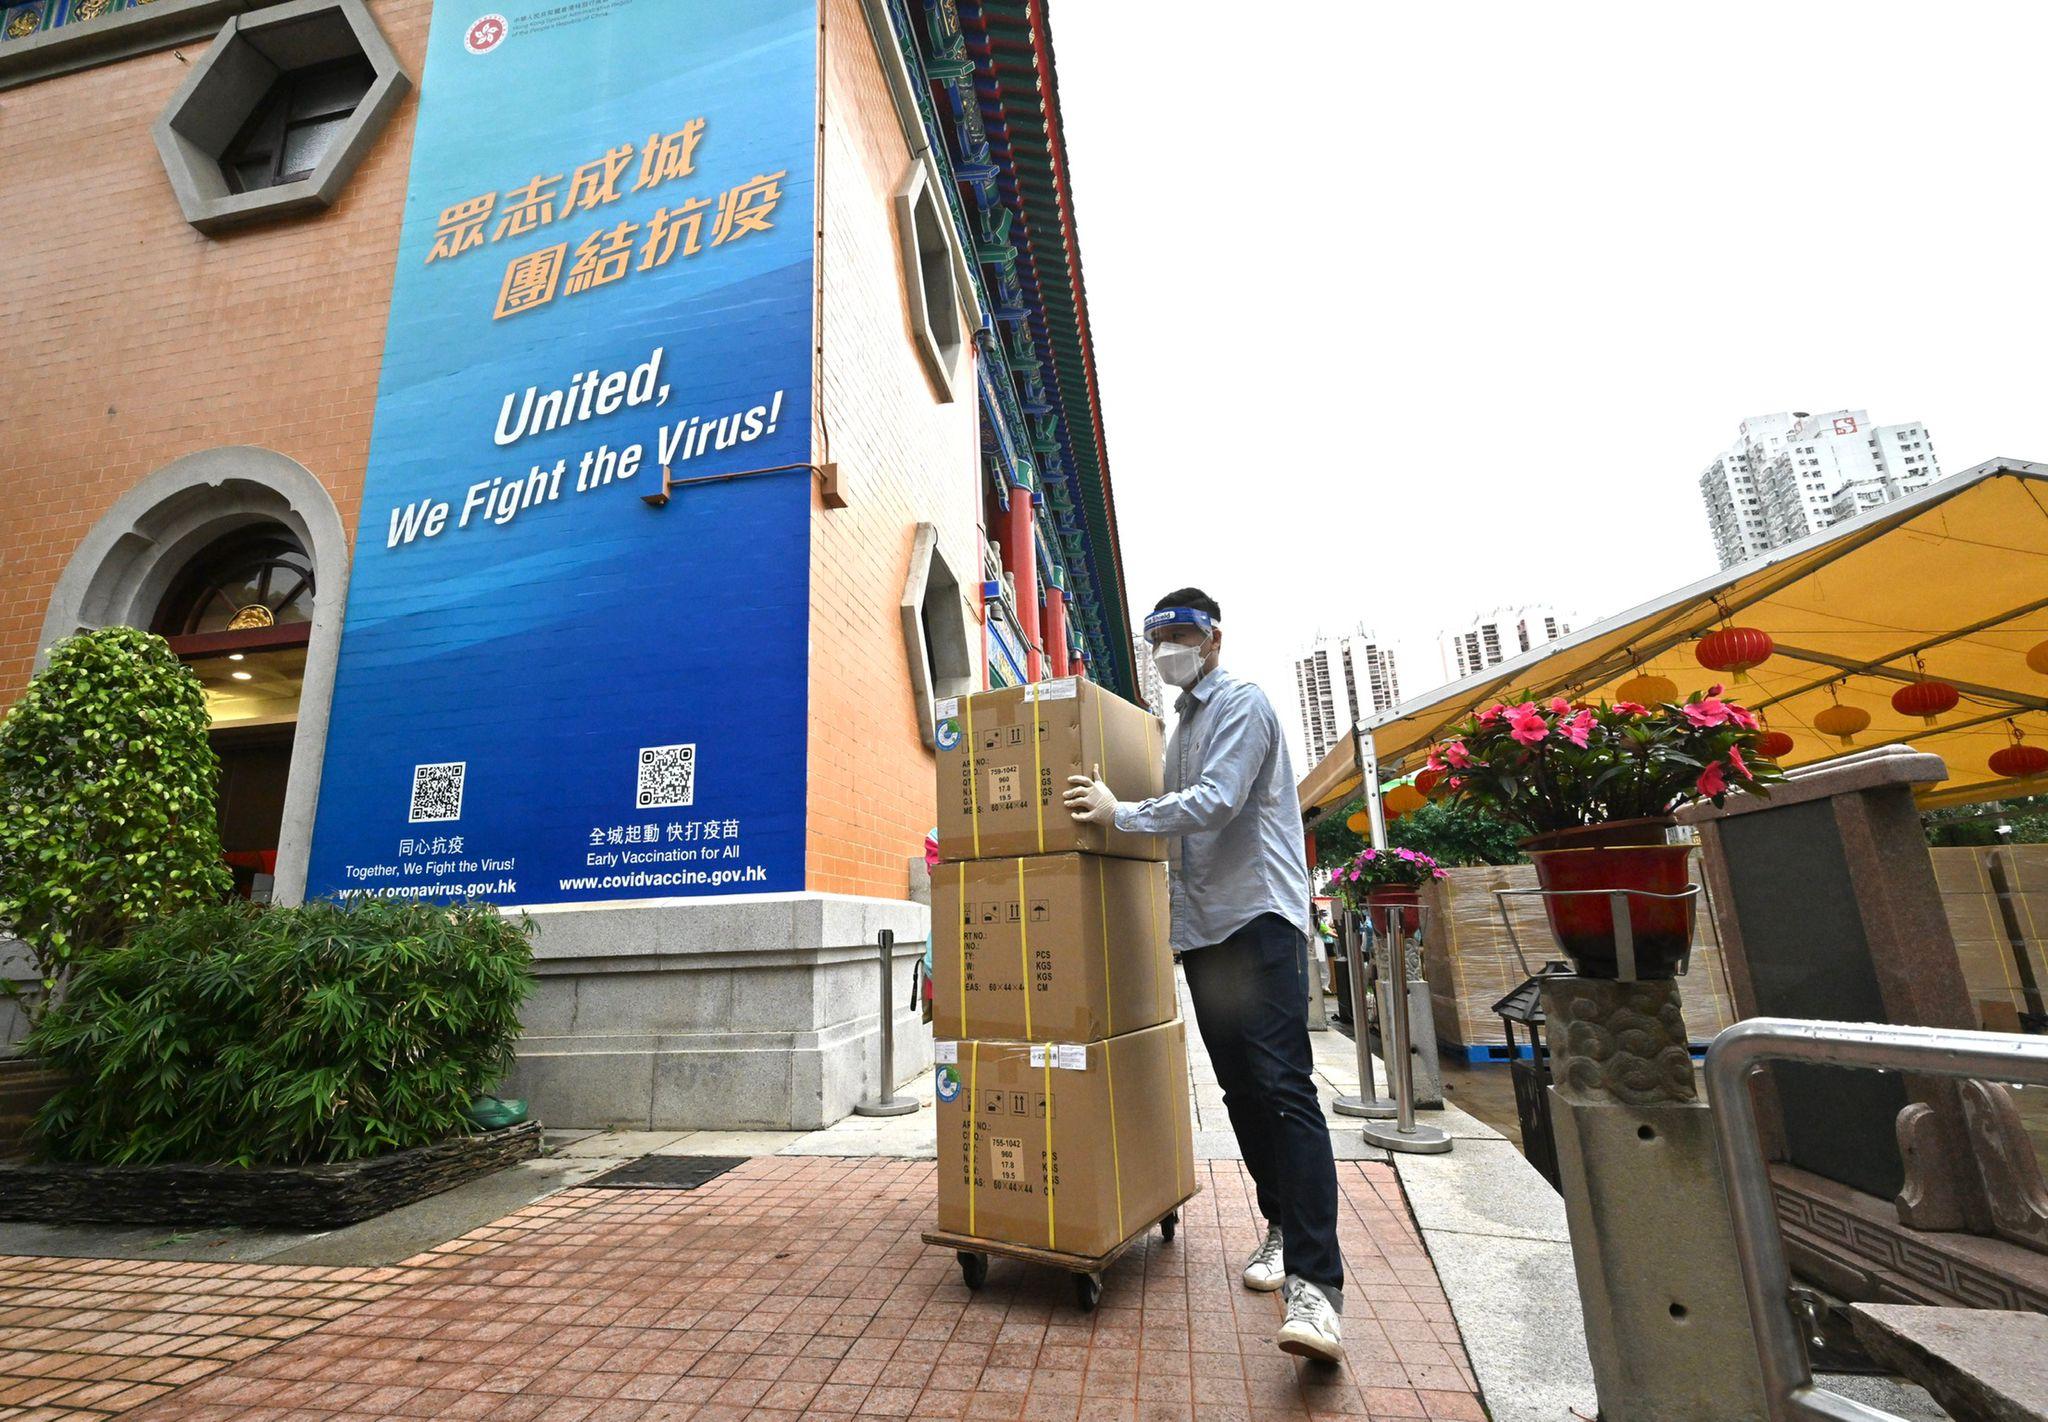 香港特别行政区政府正全力筹备「防疫服务包」的包装和派发准备工作。图示防疫抗疫物资送抵发放点。

